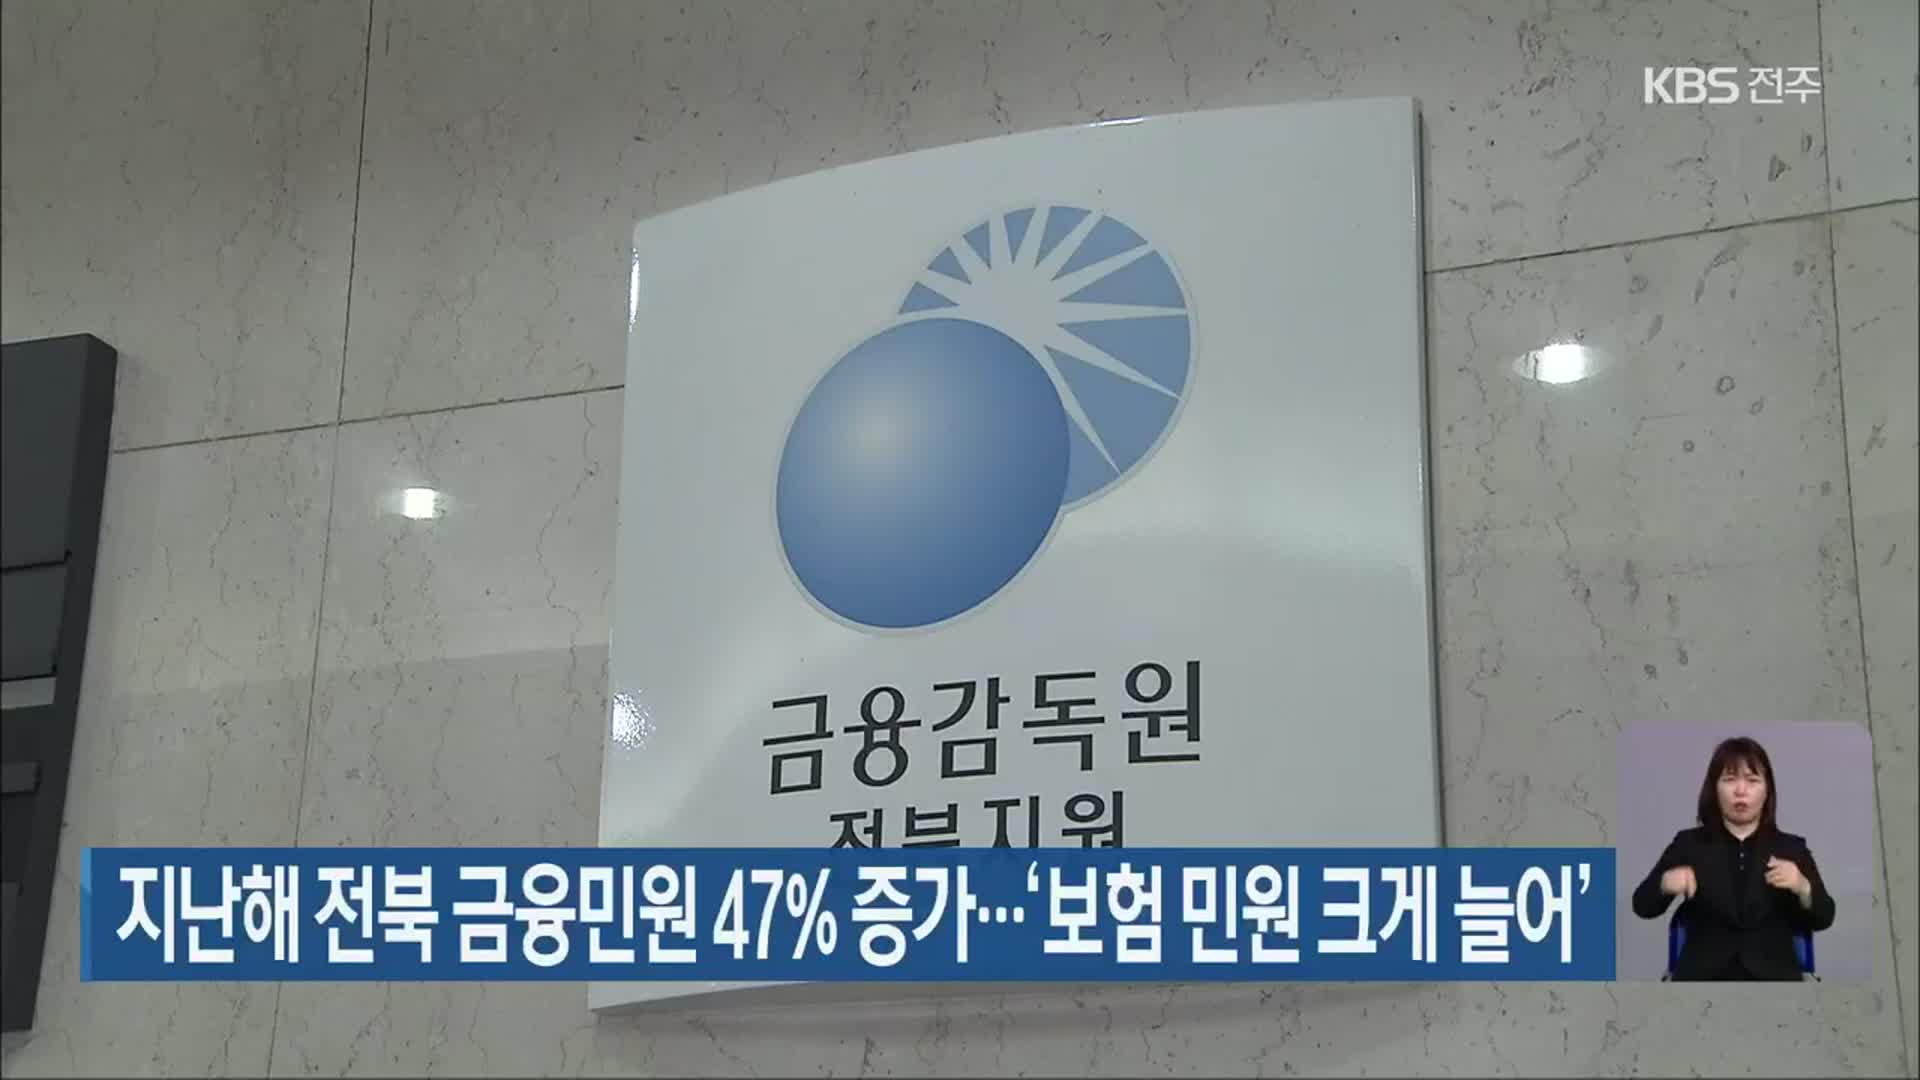 지난해 전북 금융민원 47% 증가…‘보험 민원 크게 늘어’